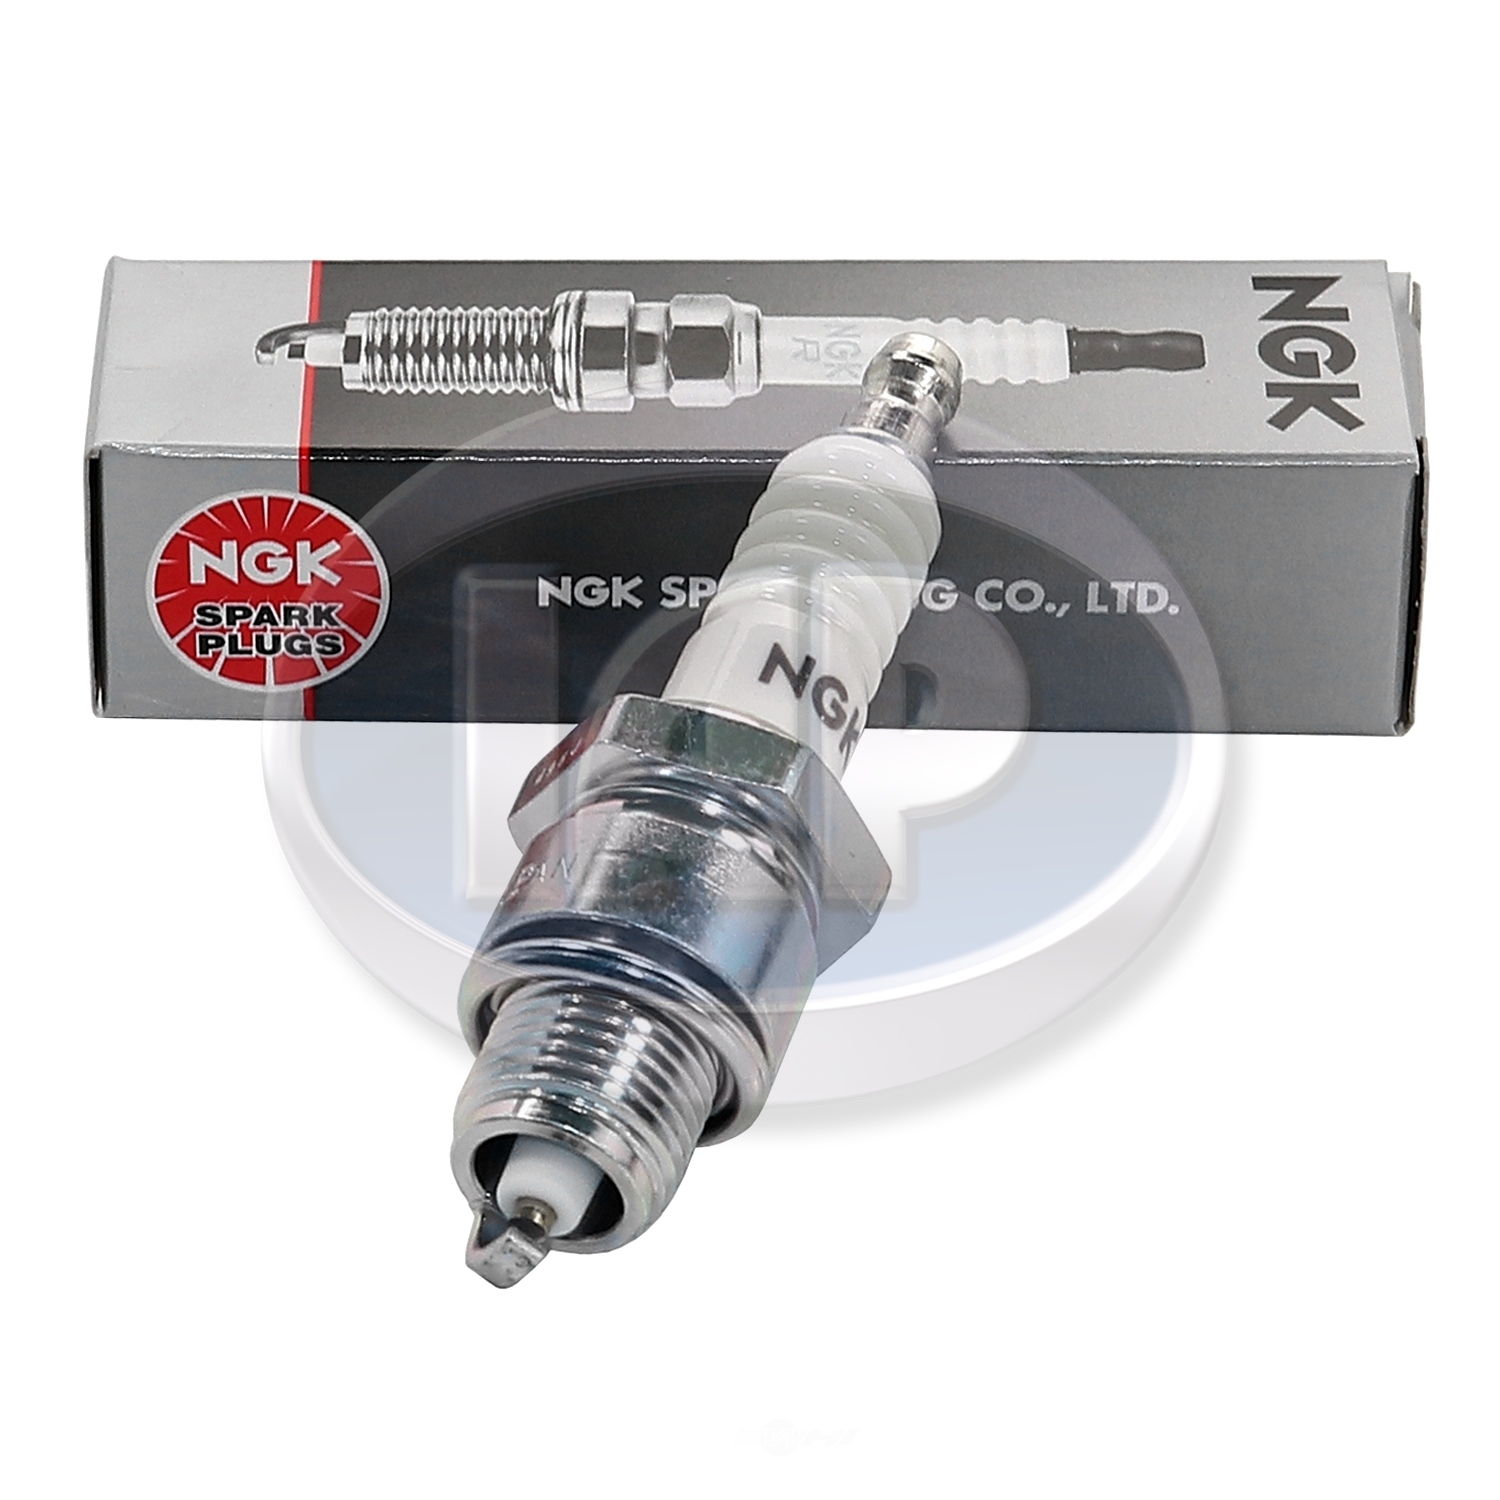 IAP/KUHLTEK MOTORWERKS - Spark Plug (Exhaust Side) - KMS NG7331